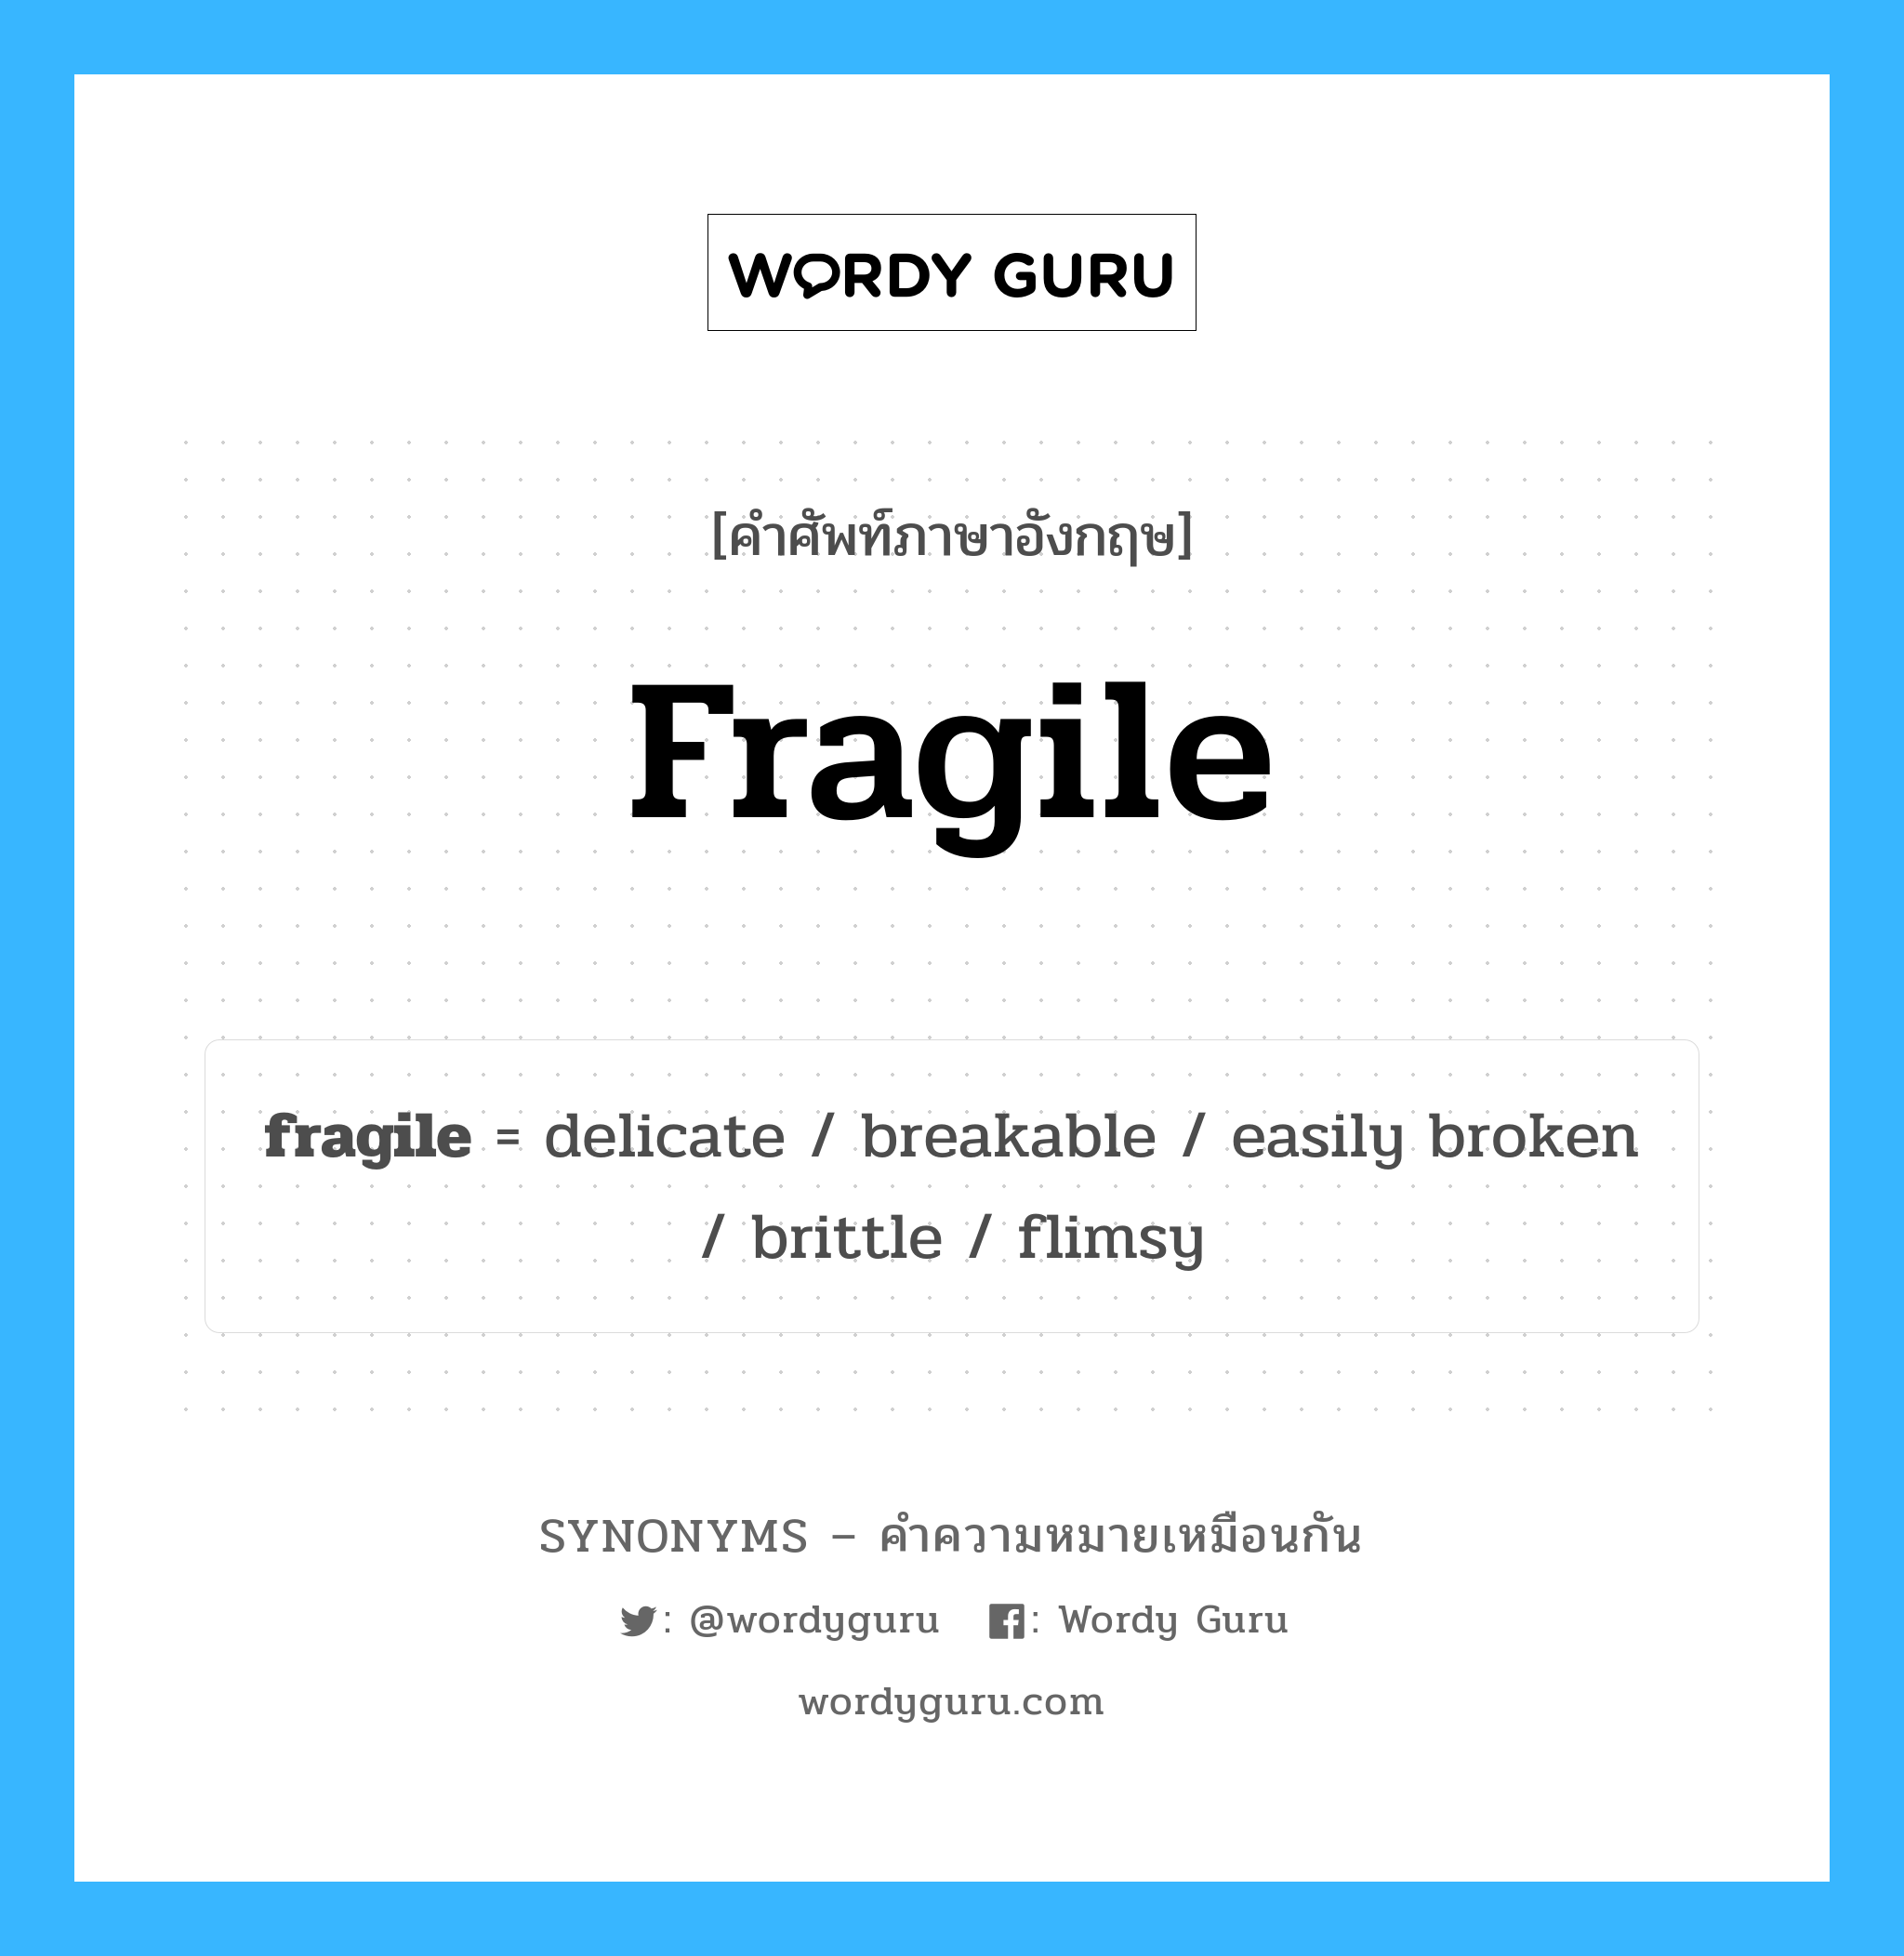 easily broken เป็นหนึ่งใน fragile และมีคำอื่น ๆ อีกดังนี้, คำศัพท์ภาษาอังกฤษ easily broken ความหมายคล้ายกันกับ fragile แปลว่า หักได้ง่าย หมวด fragile